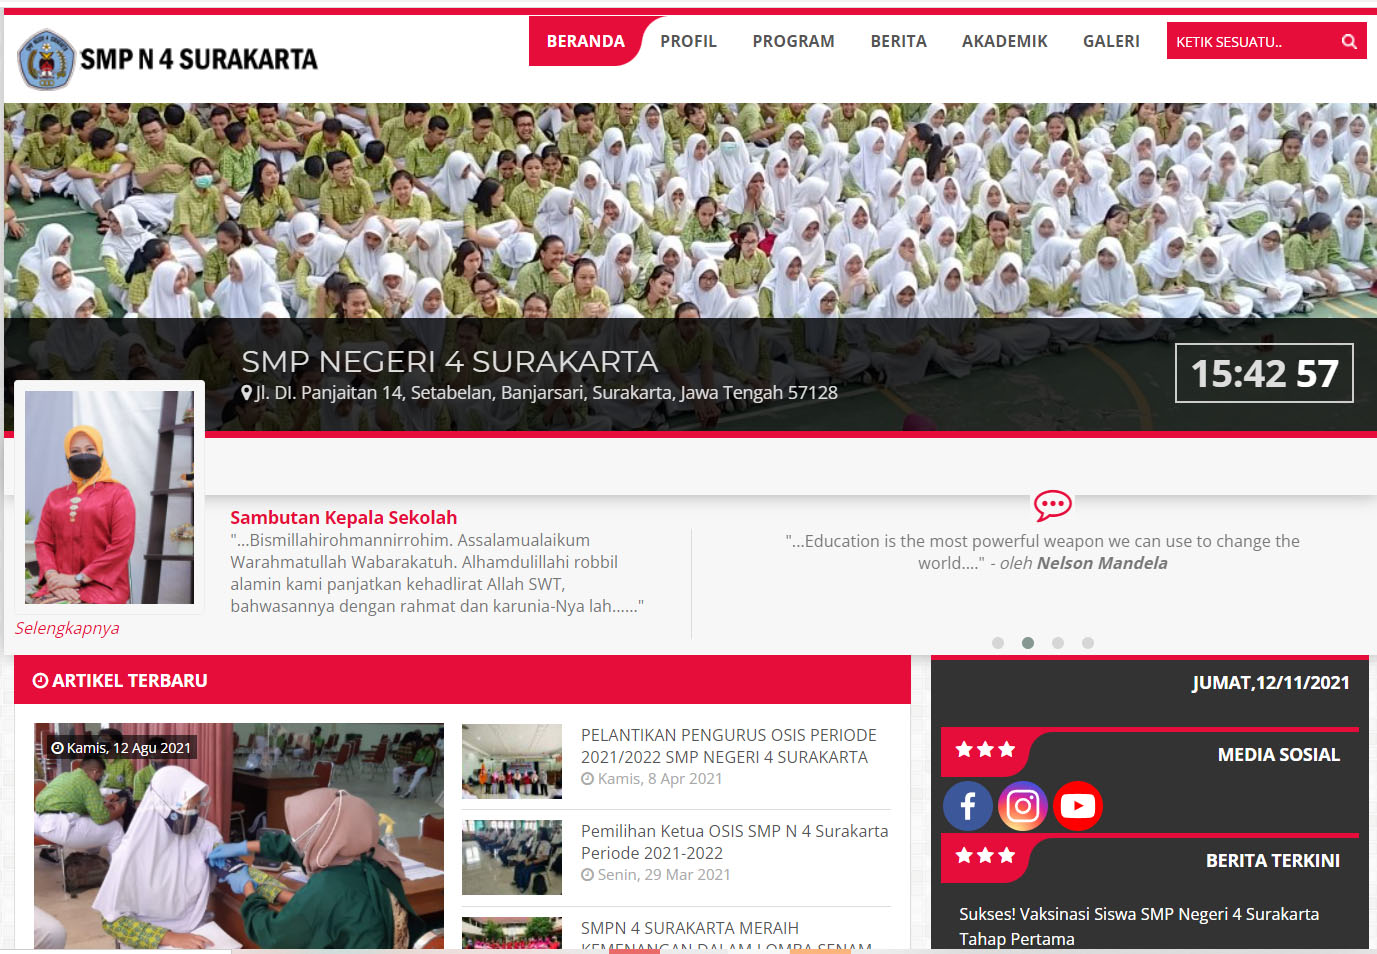 Pengaktifan Kembali Website SMP N 4 Surakarta